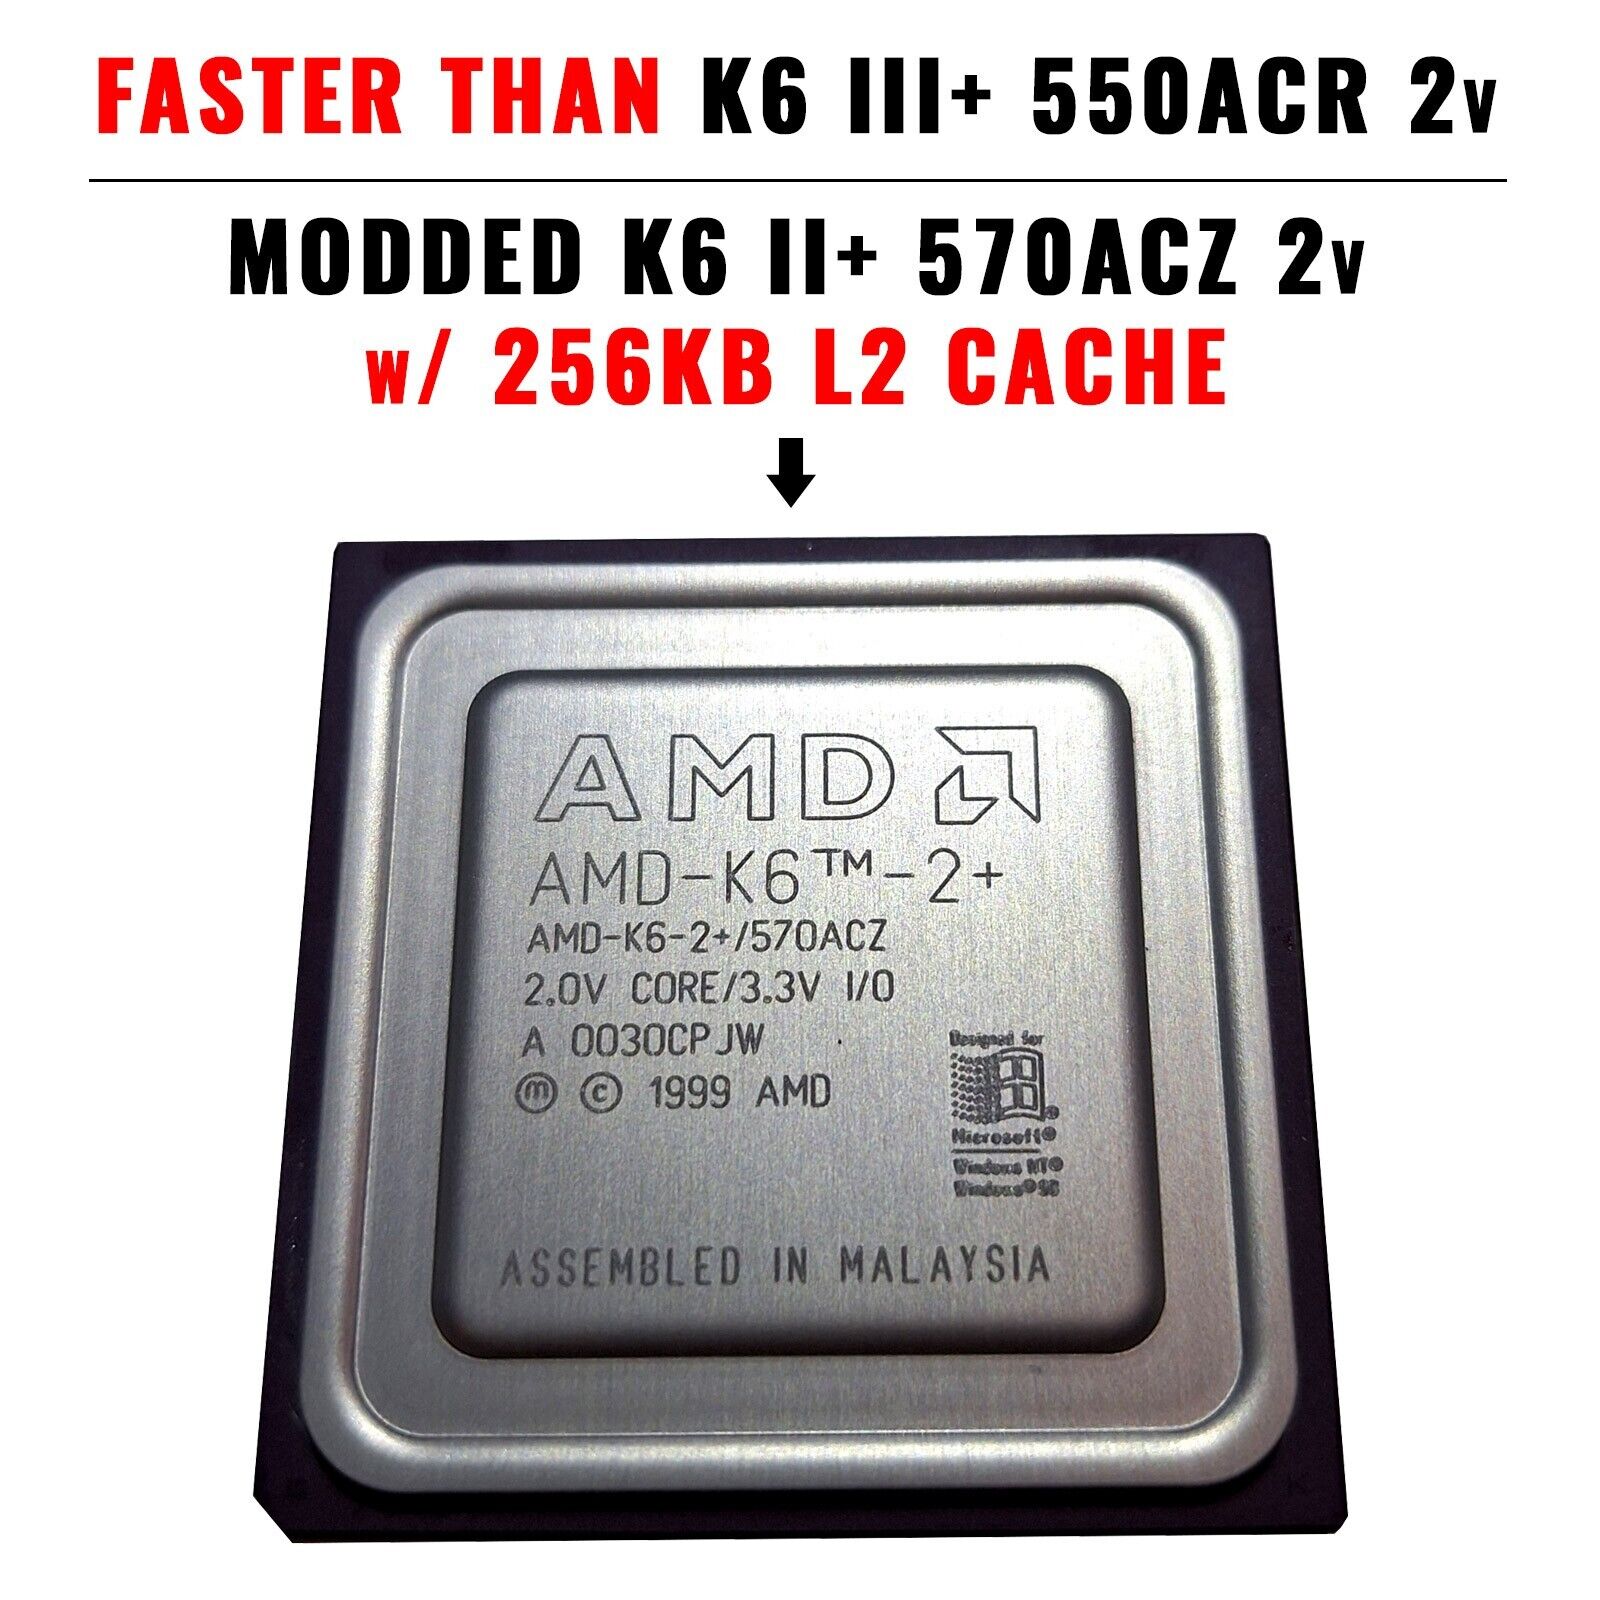 Modded AMD K6 2+ 570ACZ to K6 III+ 550ACR CPU, 600Mhz or 633 (K6 3+ 256kb cache)